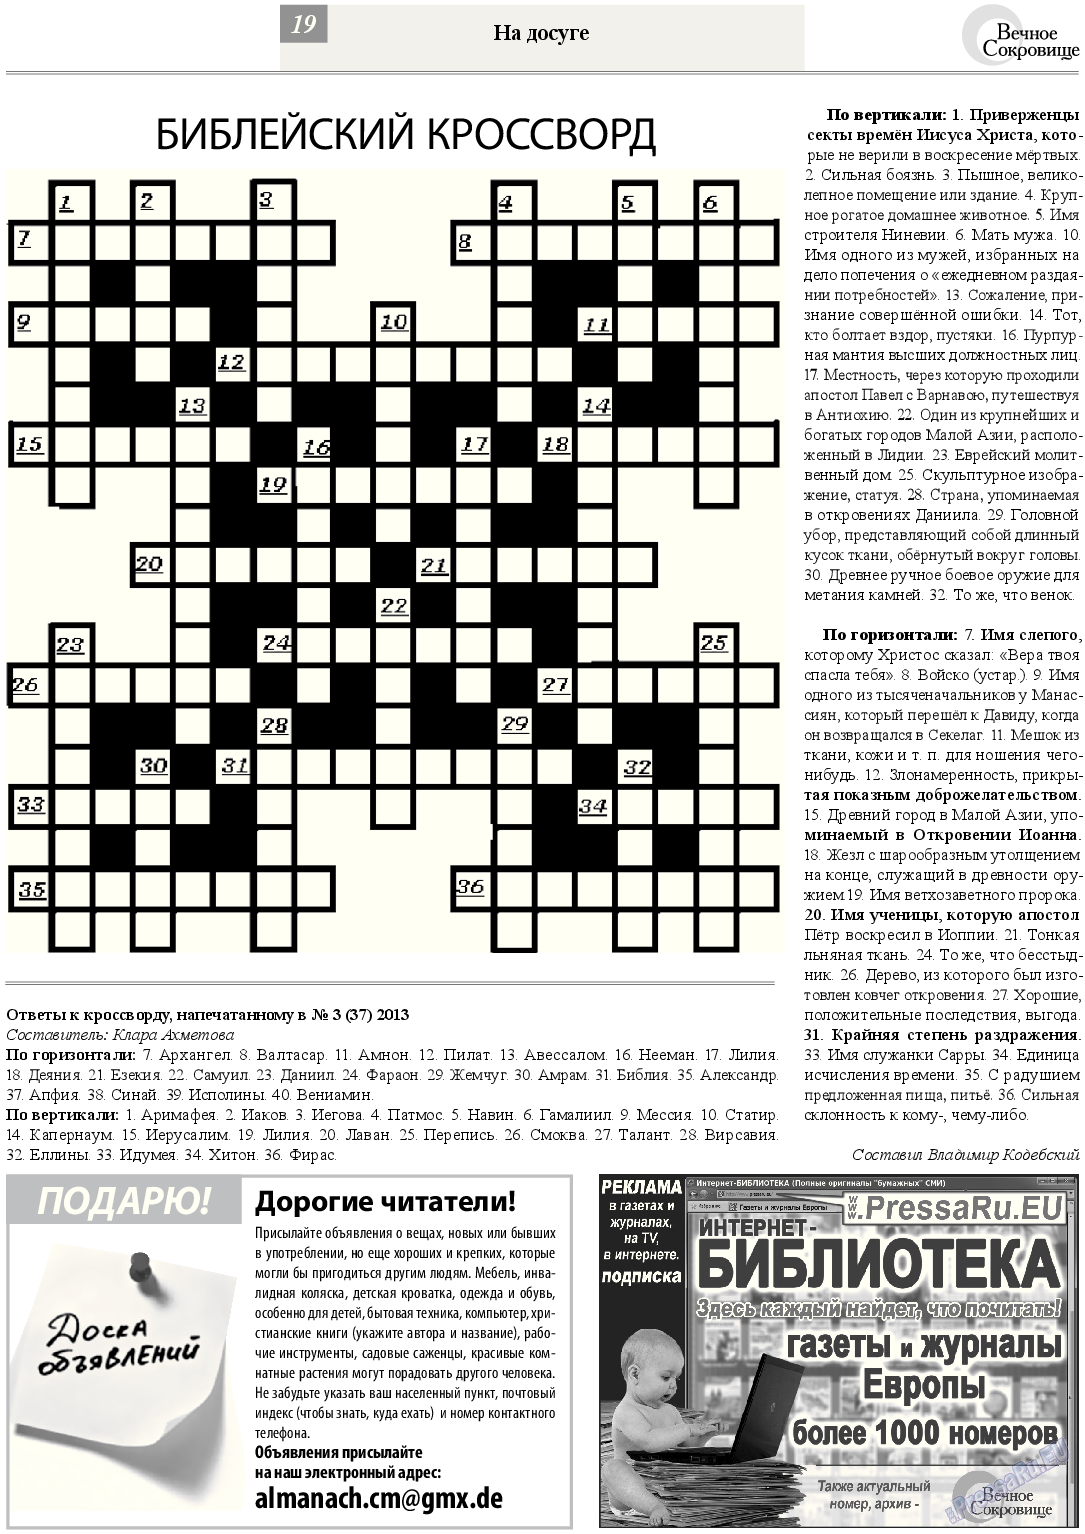 Вечное сокровище, газета. 2013 №4 стр.19